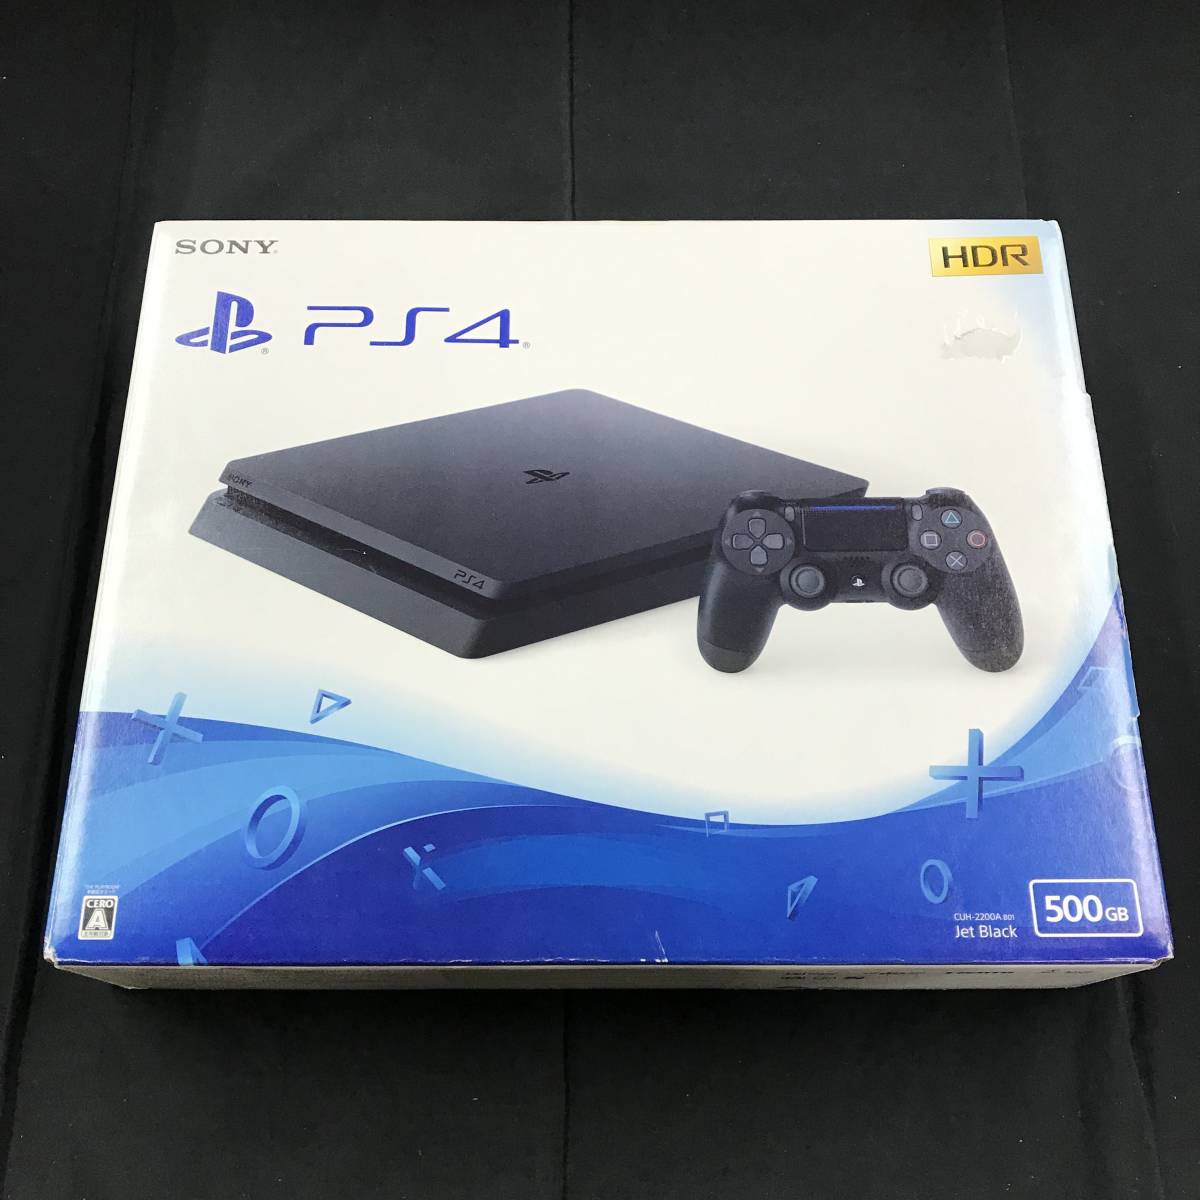 PlayStation4 500GB BUH-2200A